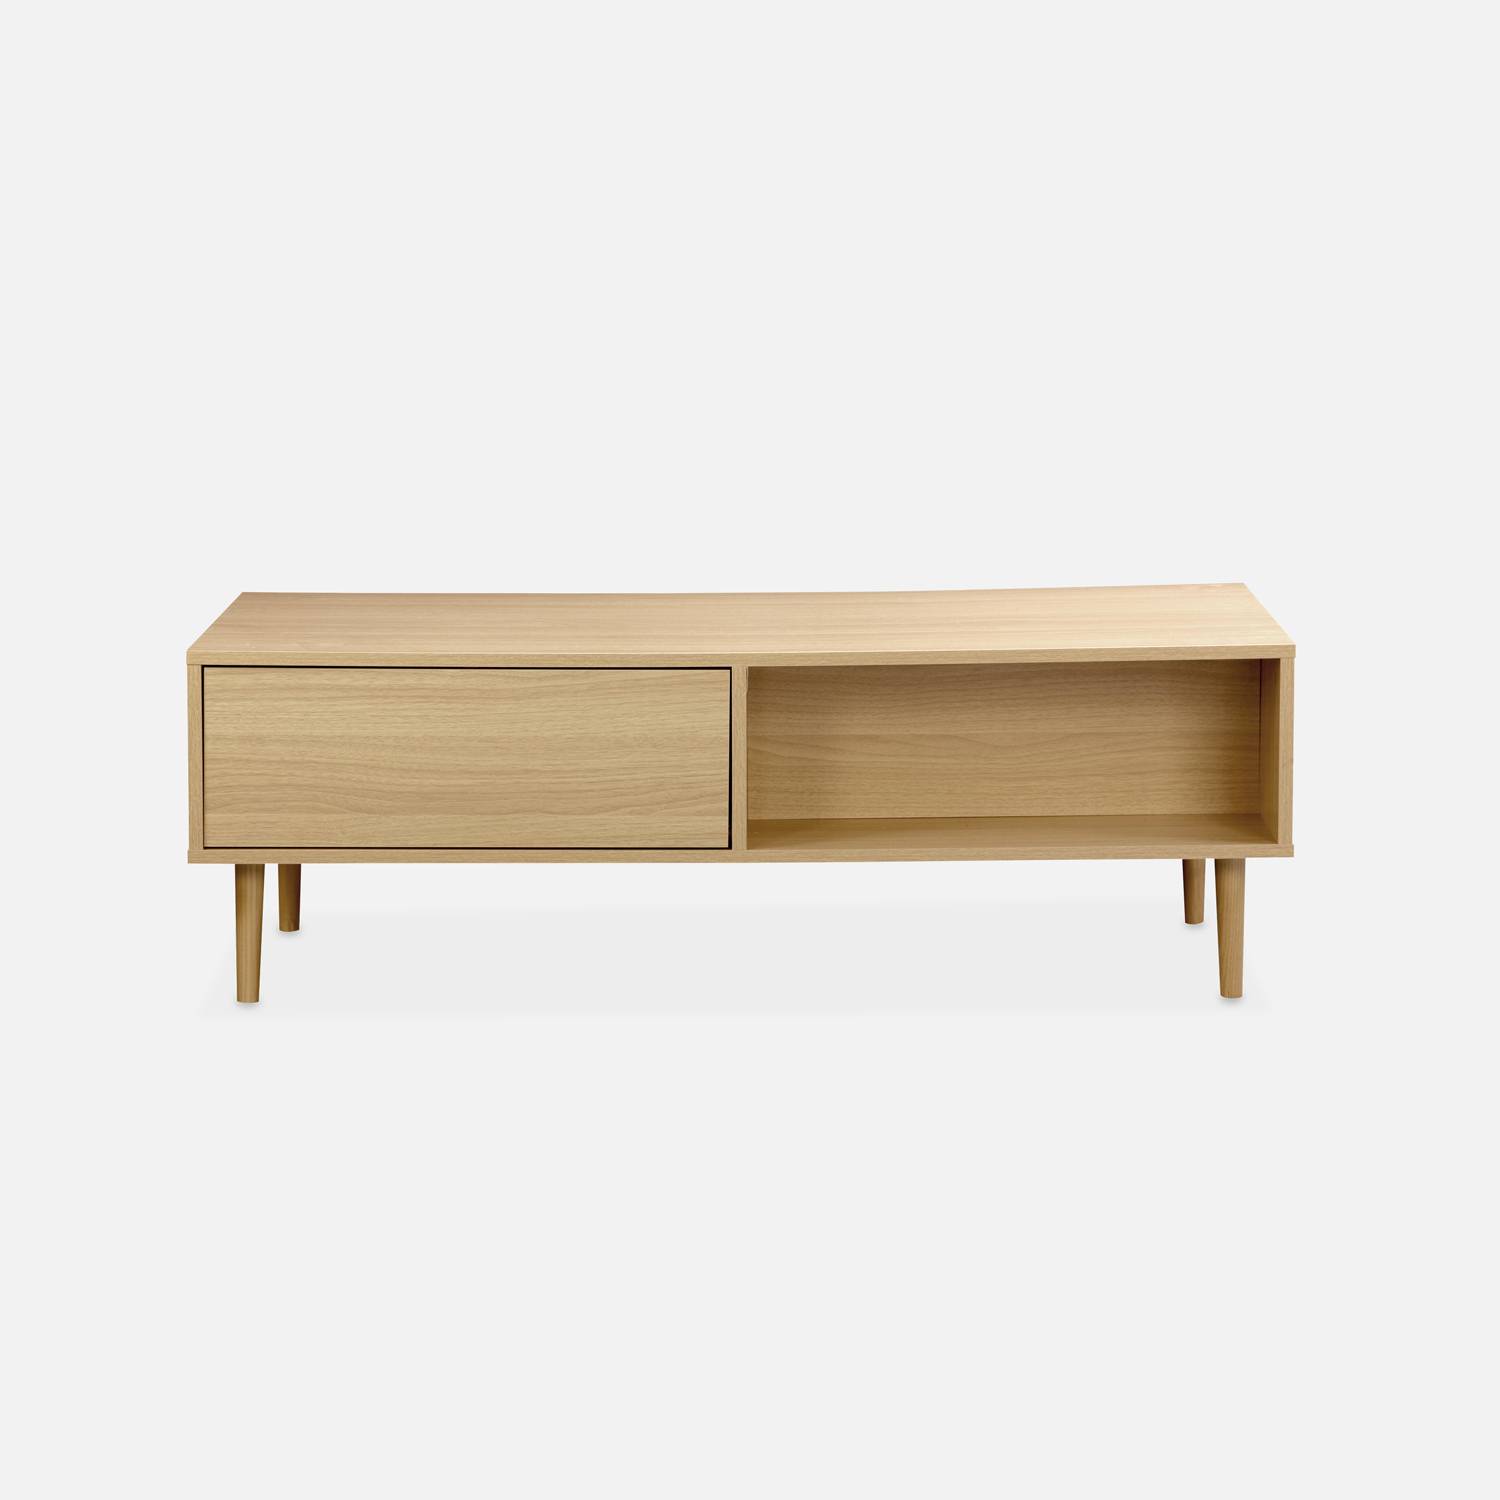 Table basse en décor bois - Mika - 2 tiroirs, 2 espaces de rangement, L 120 x l 55 x H 40cm Photo5